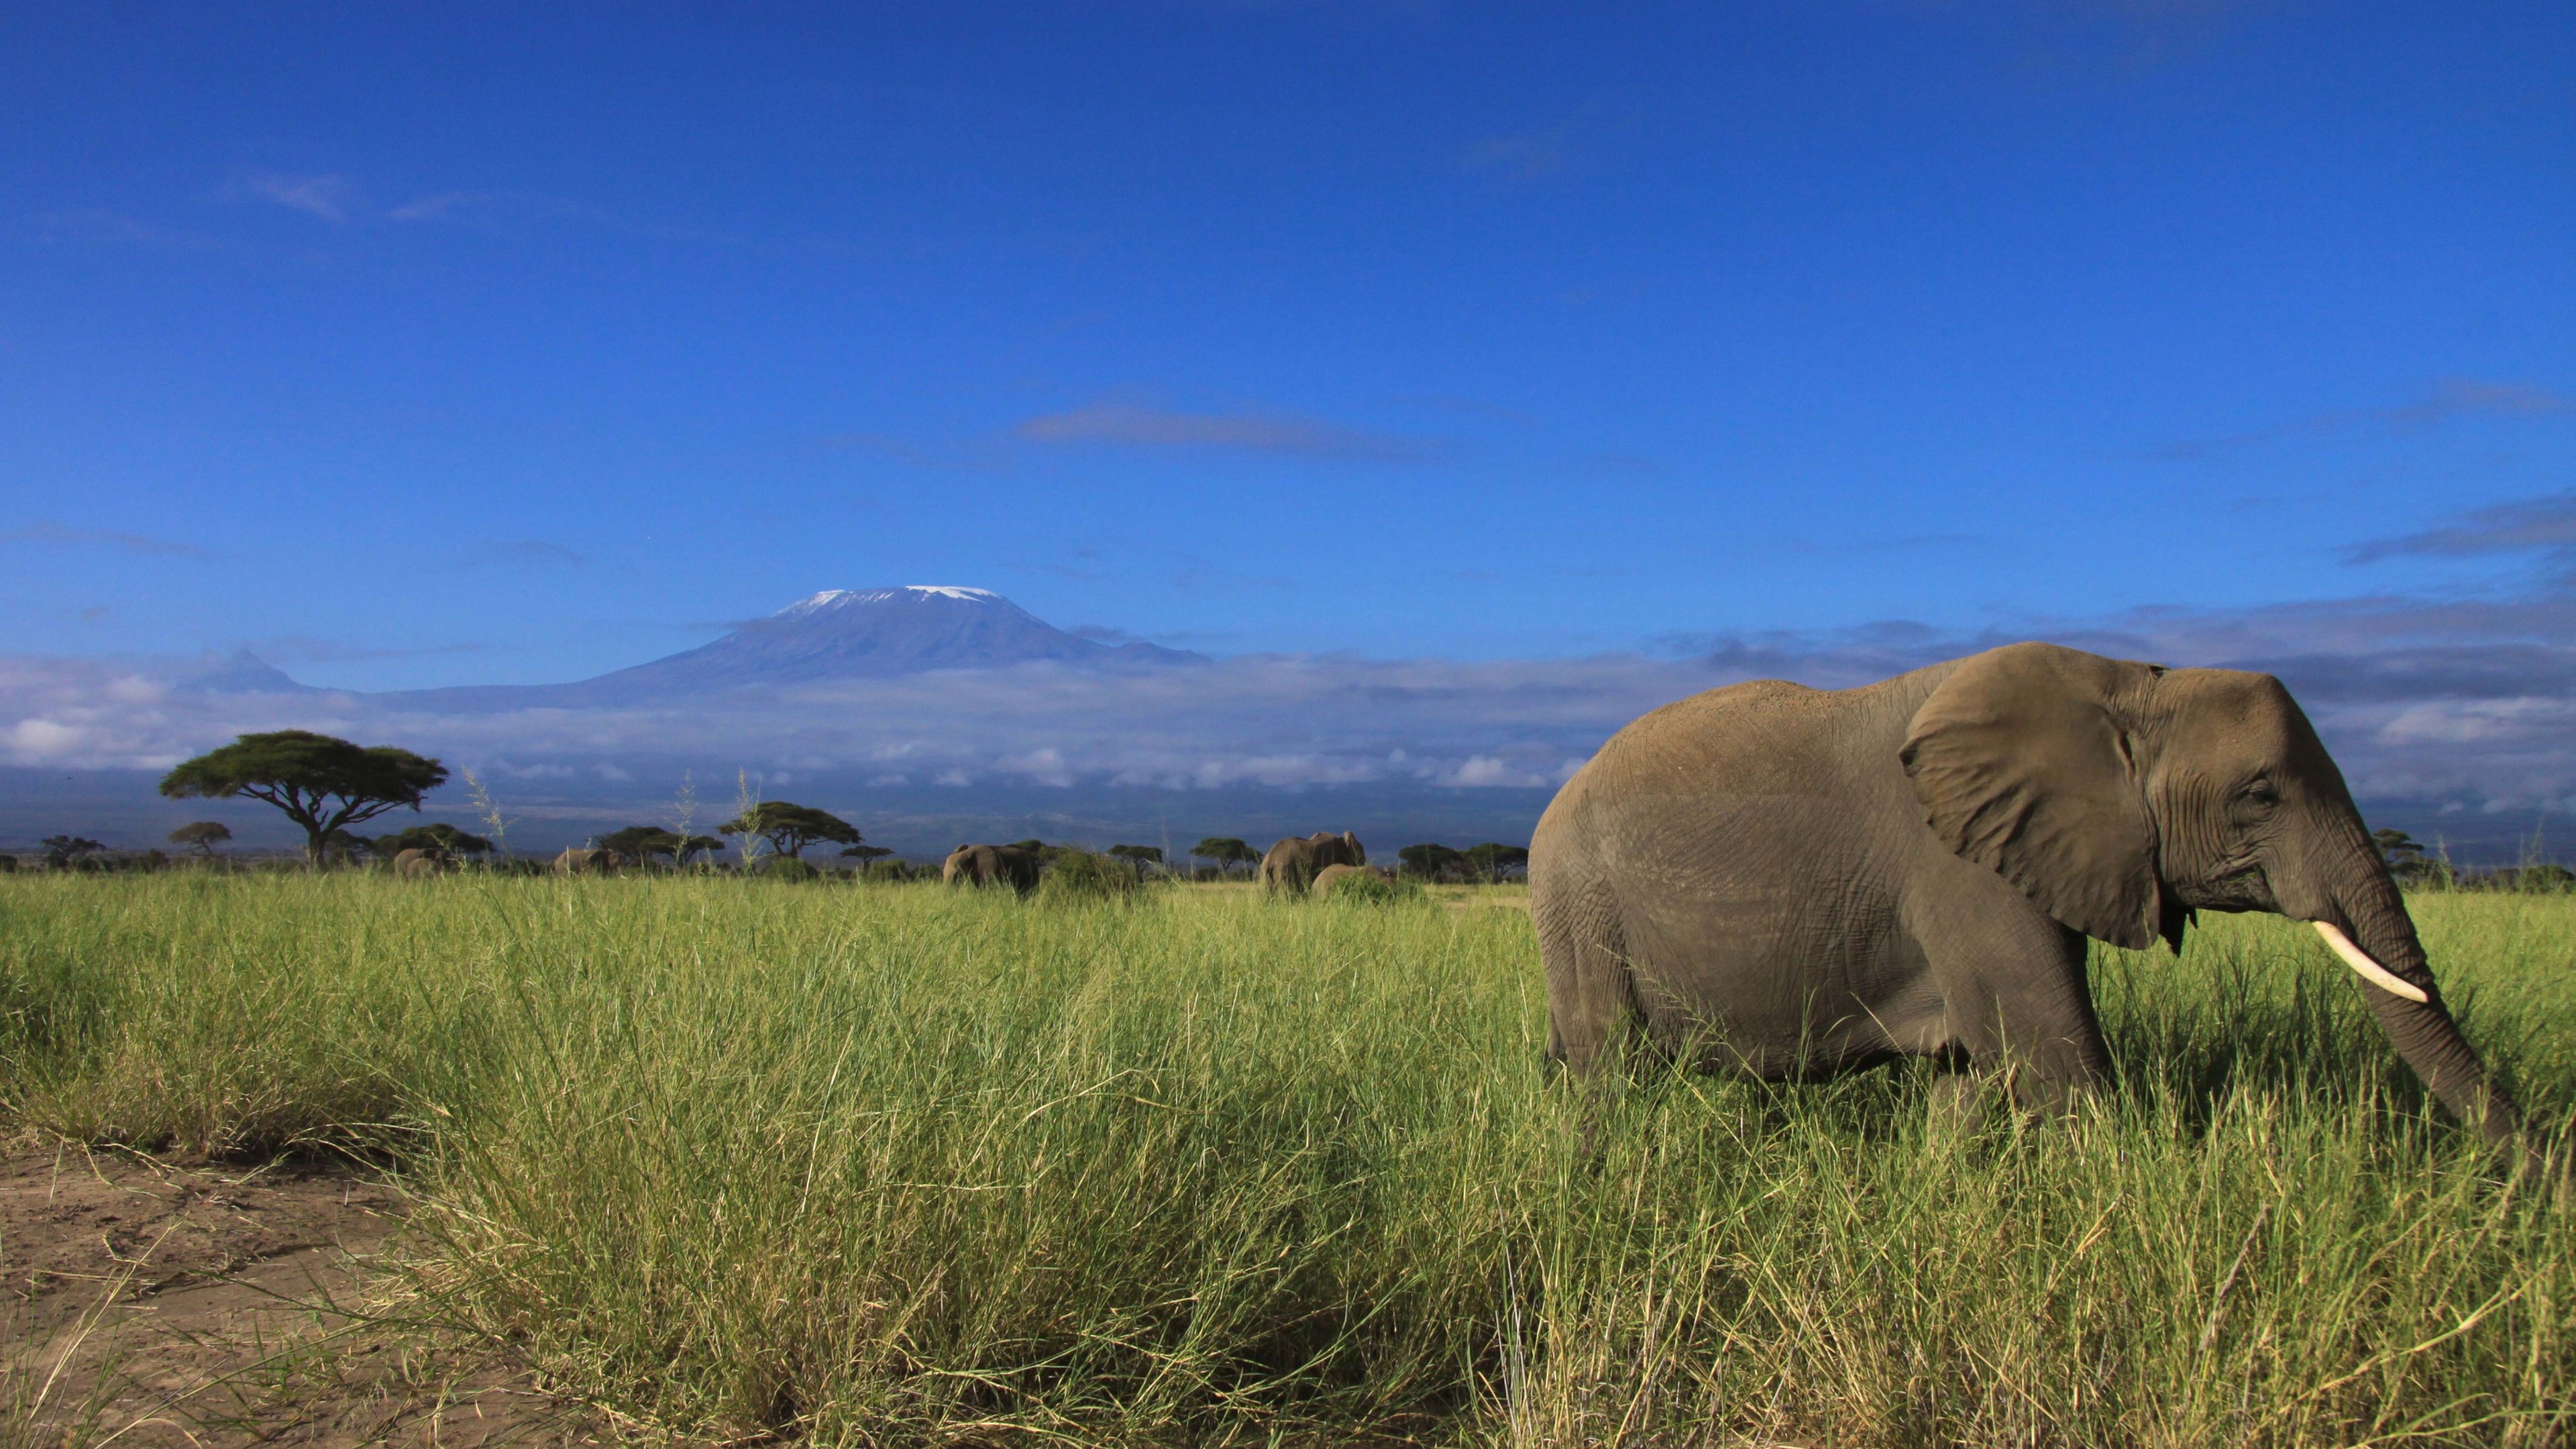 Safari Ostafrika: Elefant in der Savanne Kenias, im Hintergrund erhebt sich der Kilimandscharo